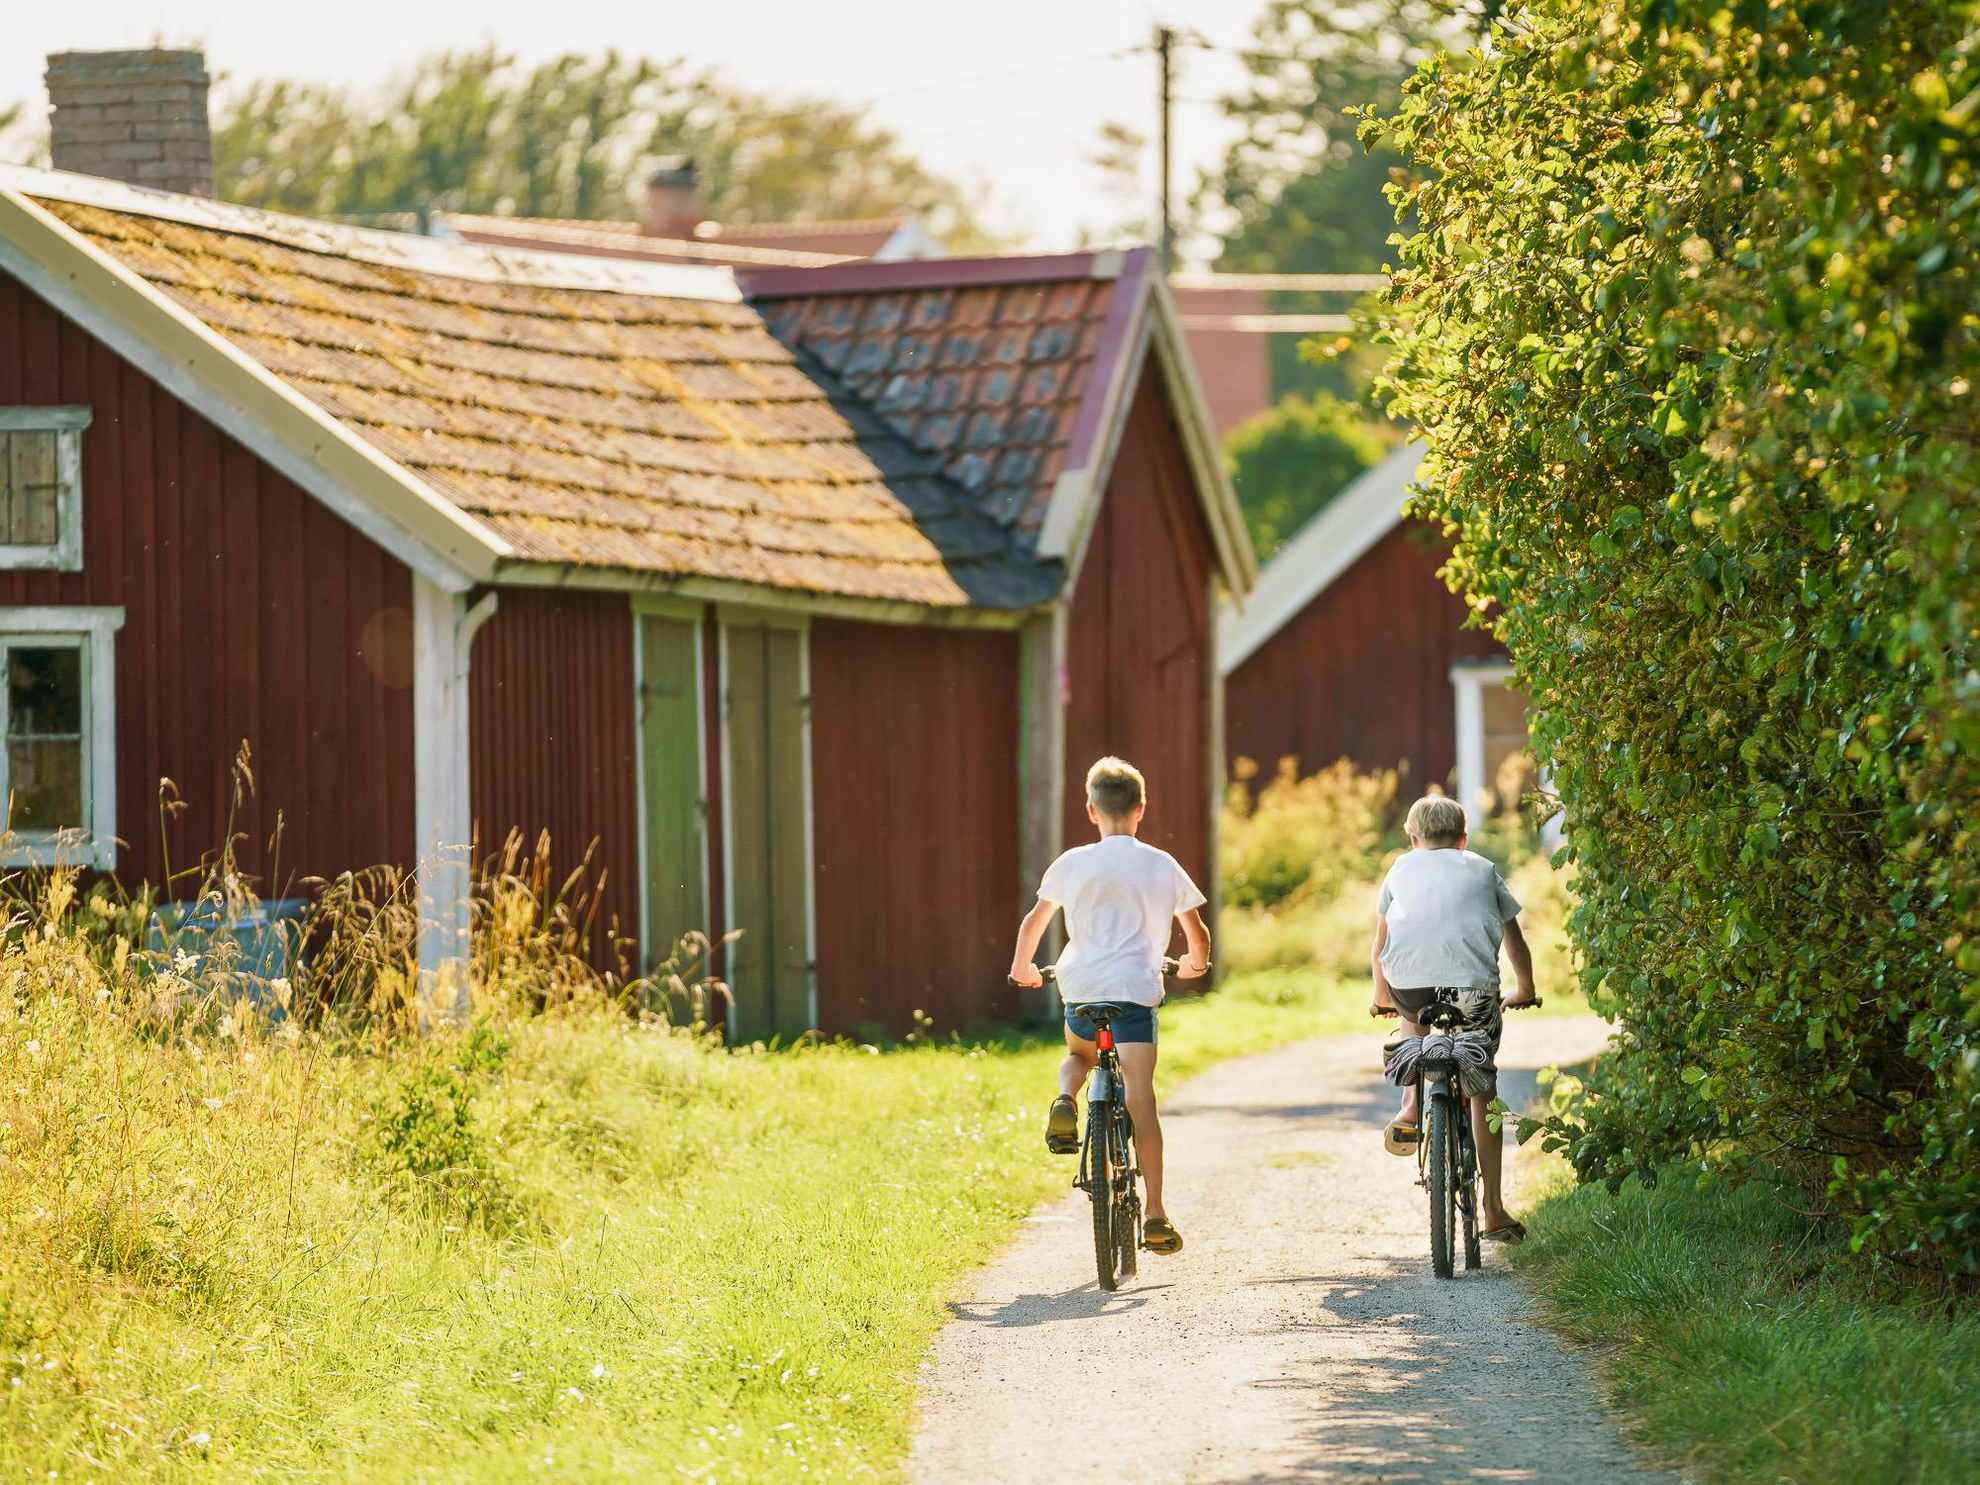 Biking on the island Norröra